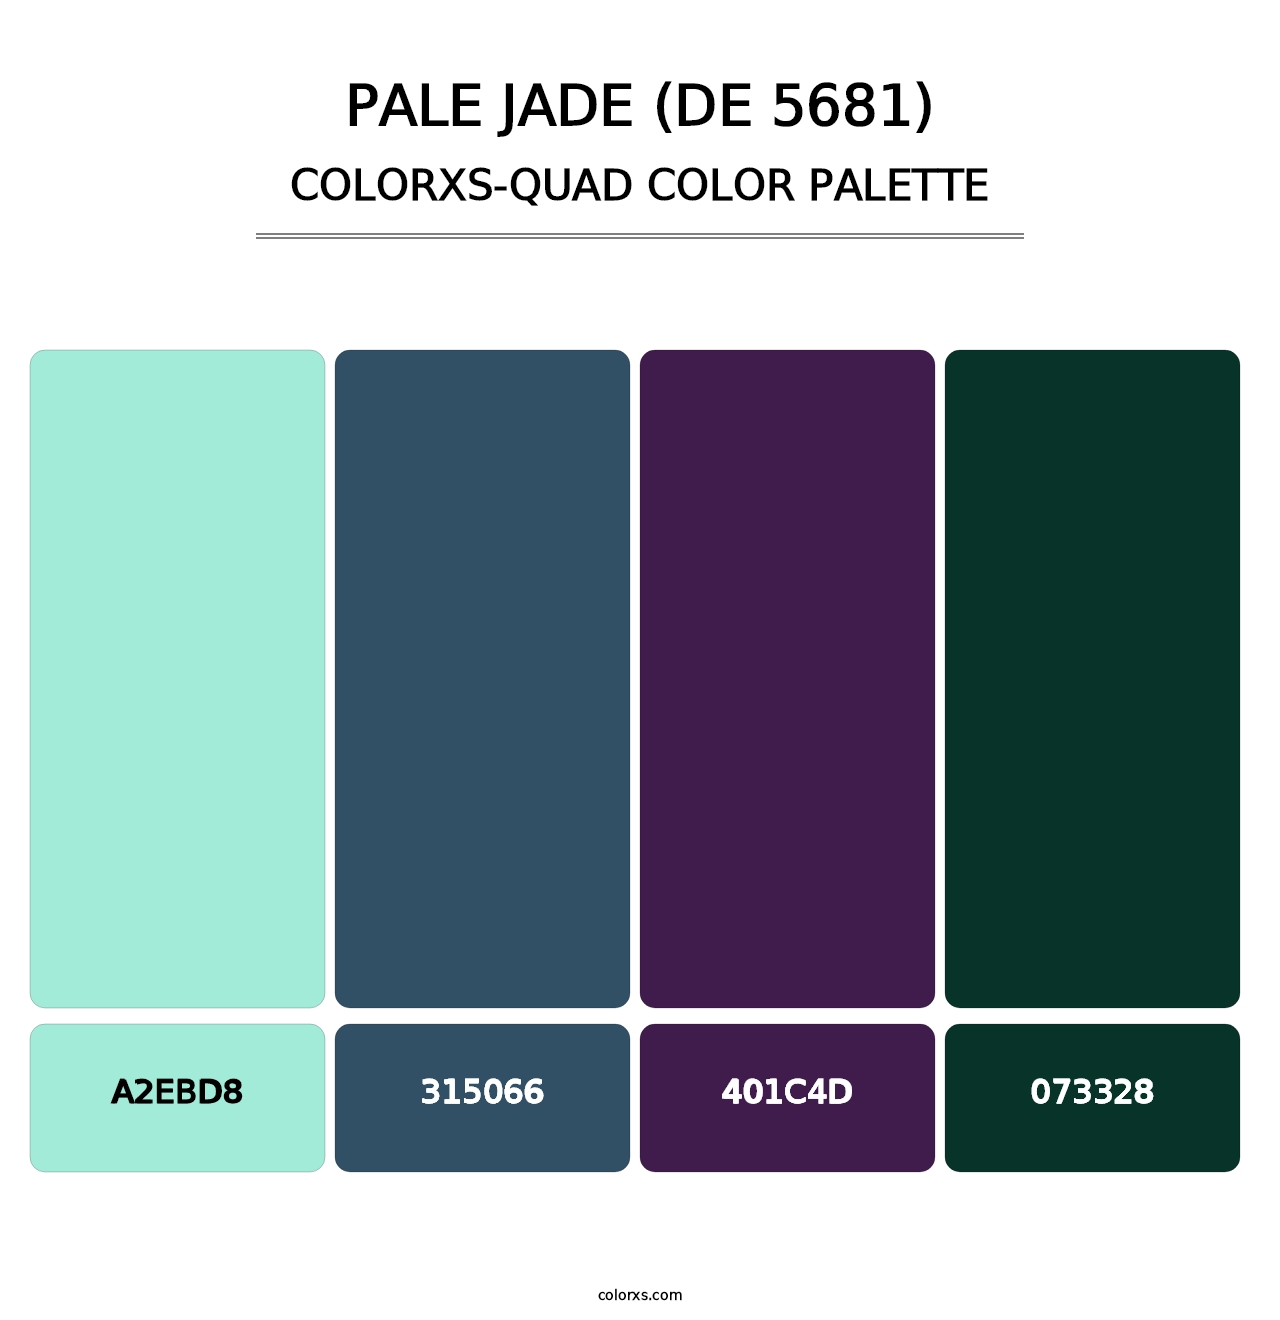 Pale Jade (DE 5681) - Colorxs Quad Palette